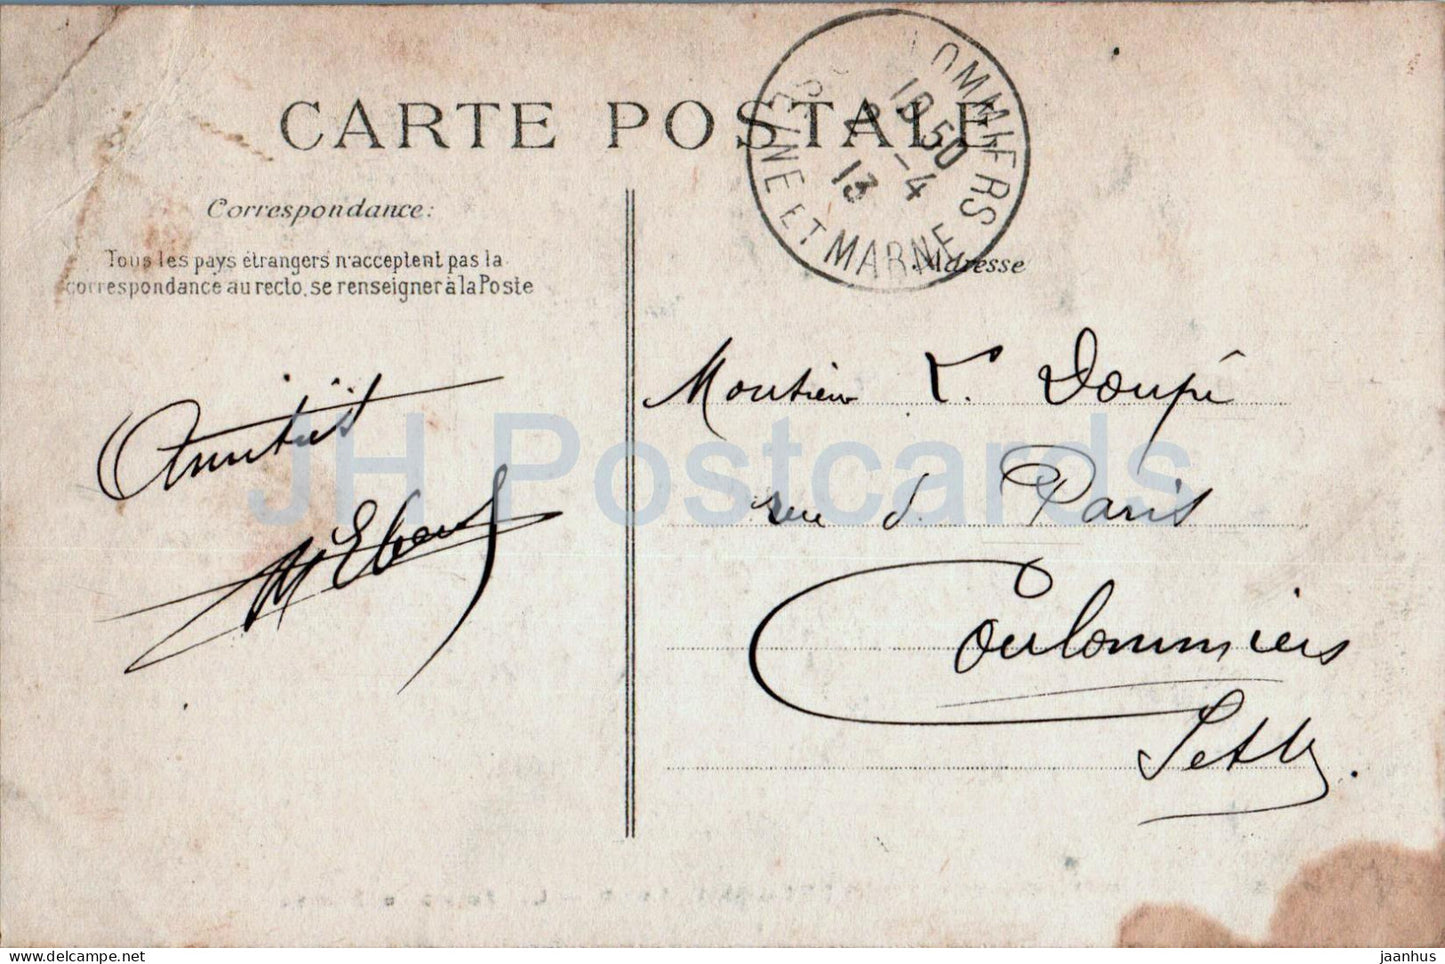 Chateauneuf sur Loire - Les Fosses du Chateau - 1895 - old postcard - 1913 - France - used